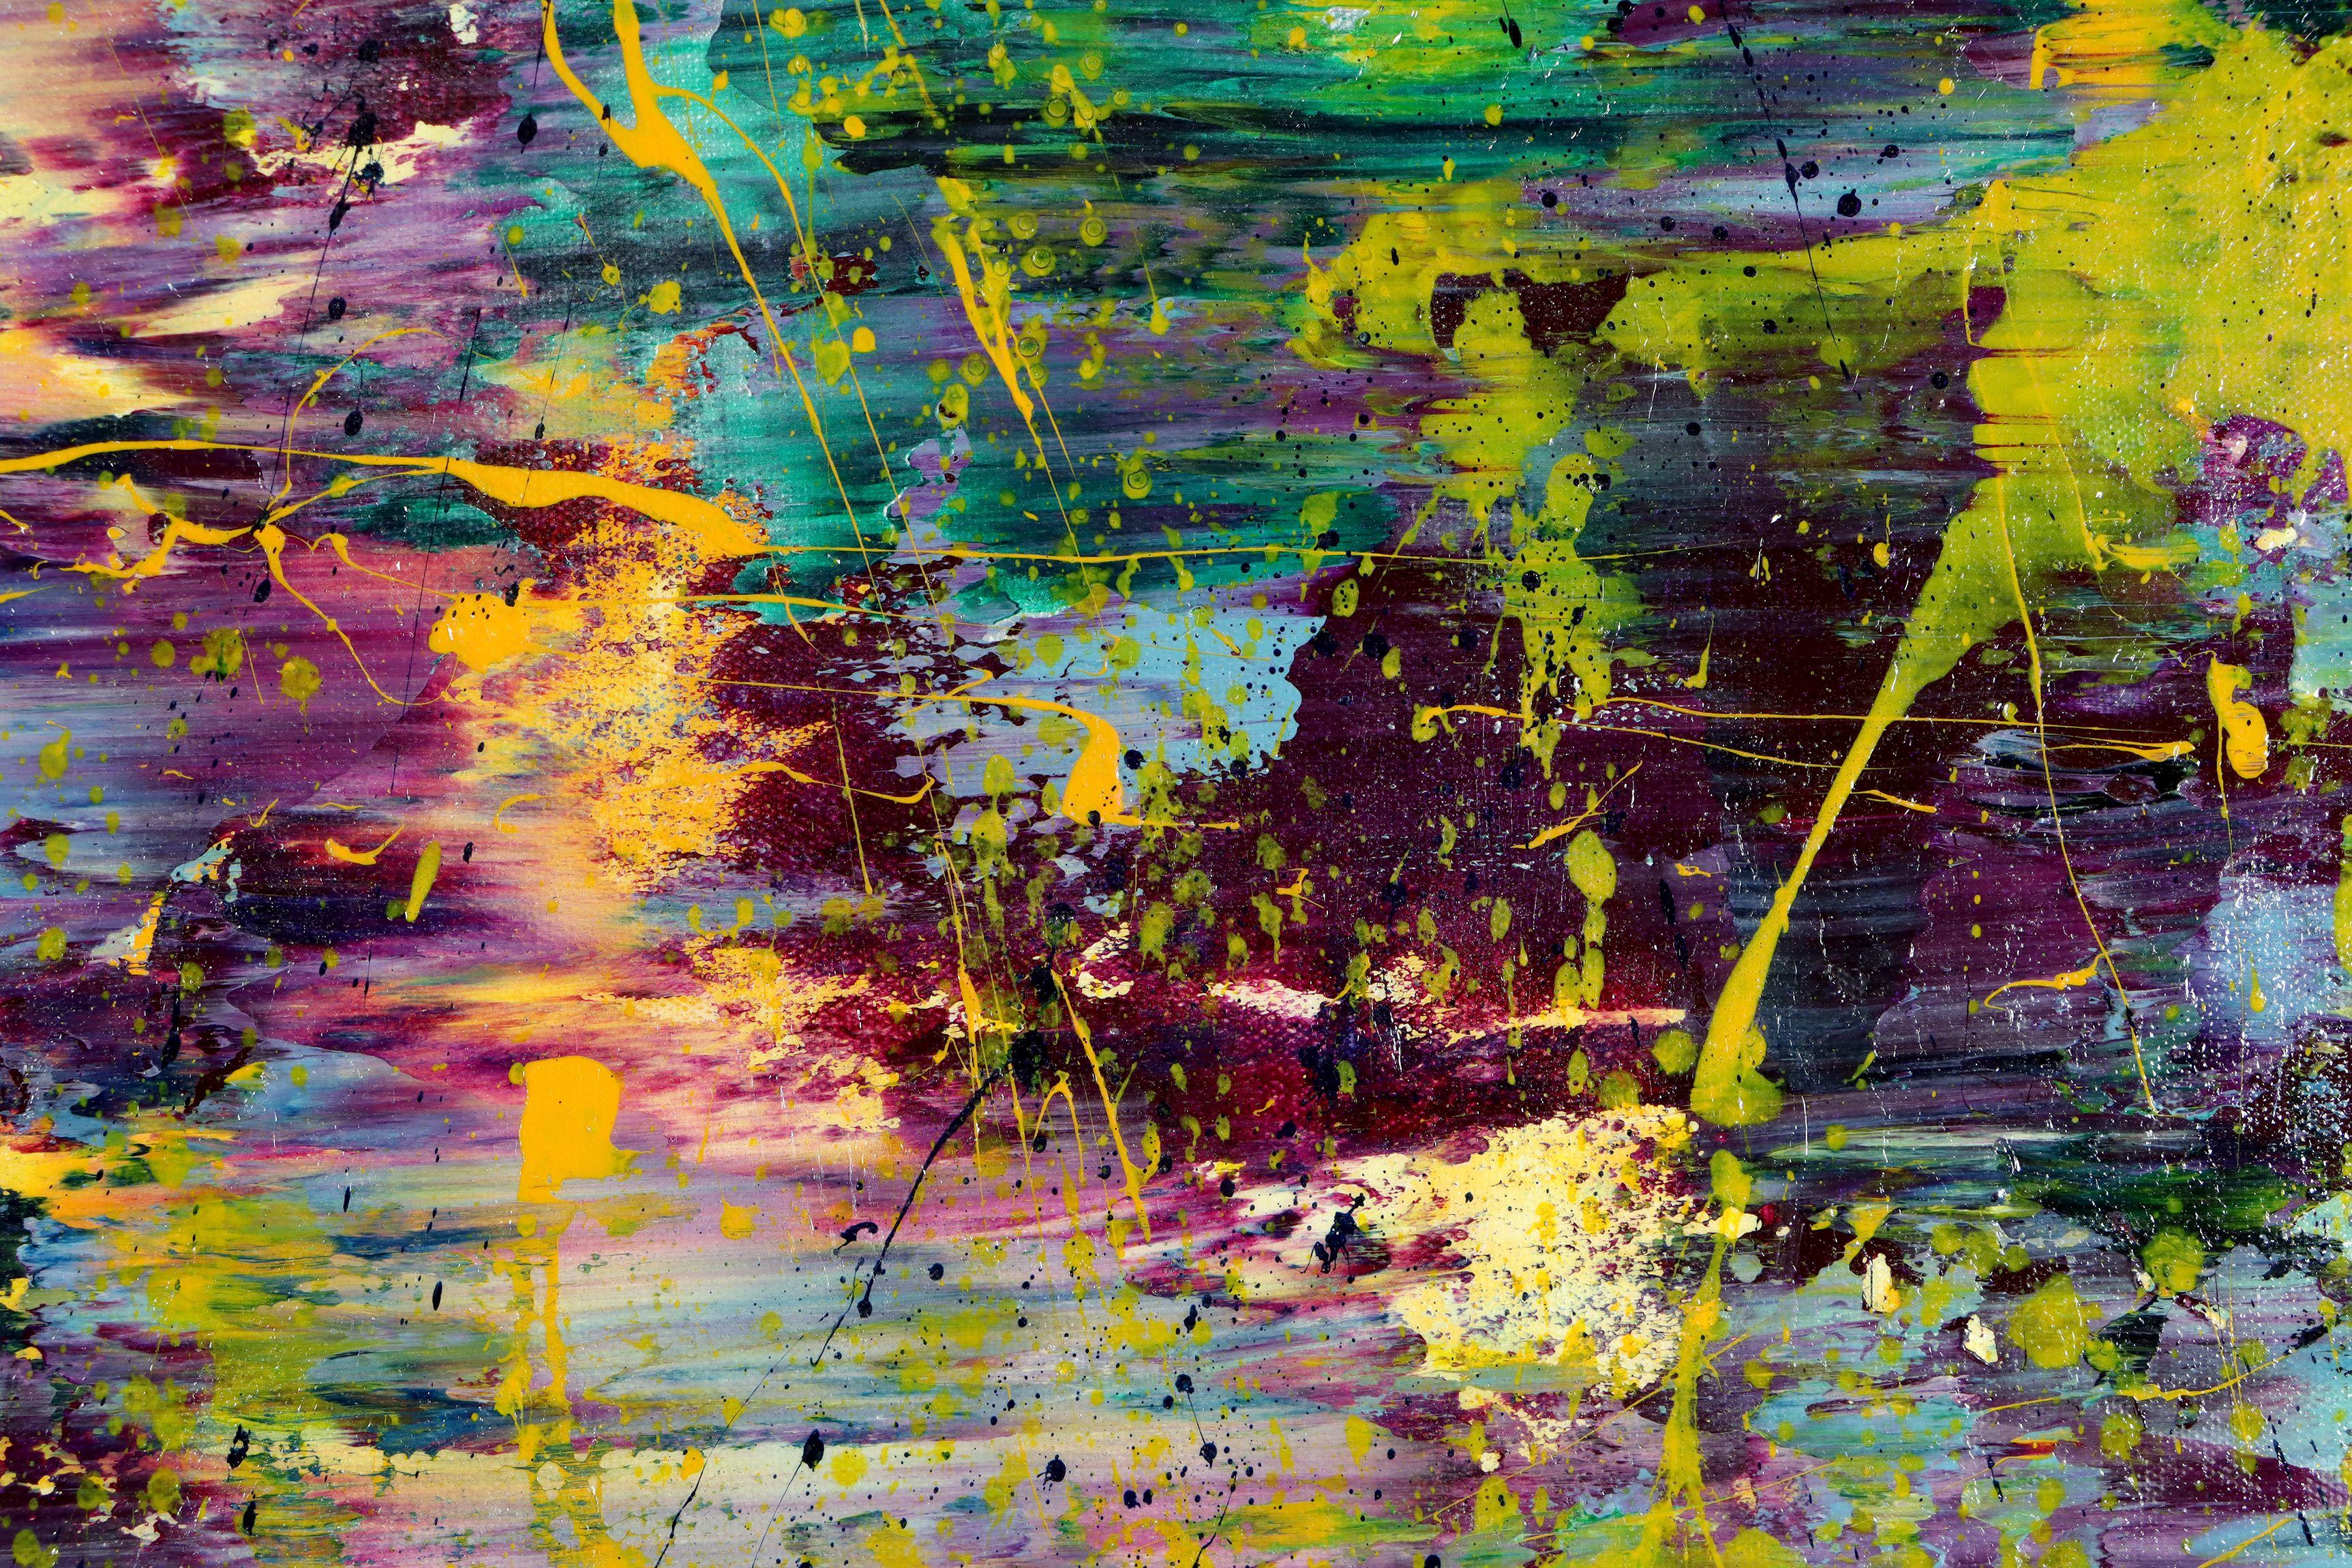     Überdimensionale abstrakte Malerei  Acryl auf Leinwand      Dieses Kunstwerk wurde durch Überlagerung und Vermischung von gelben, hellvioletten, blauen und grünen Schichten mit einer Schicht aus feinen irisierenden Partikeln und einer glänzenden